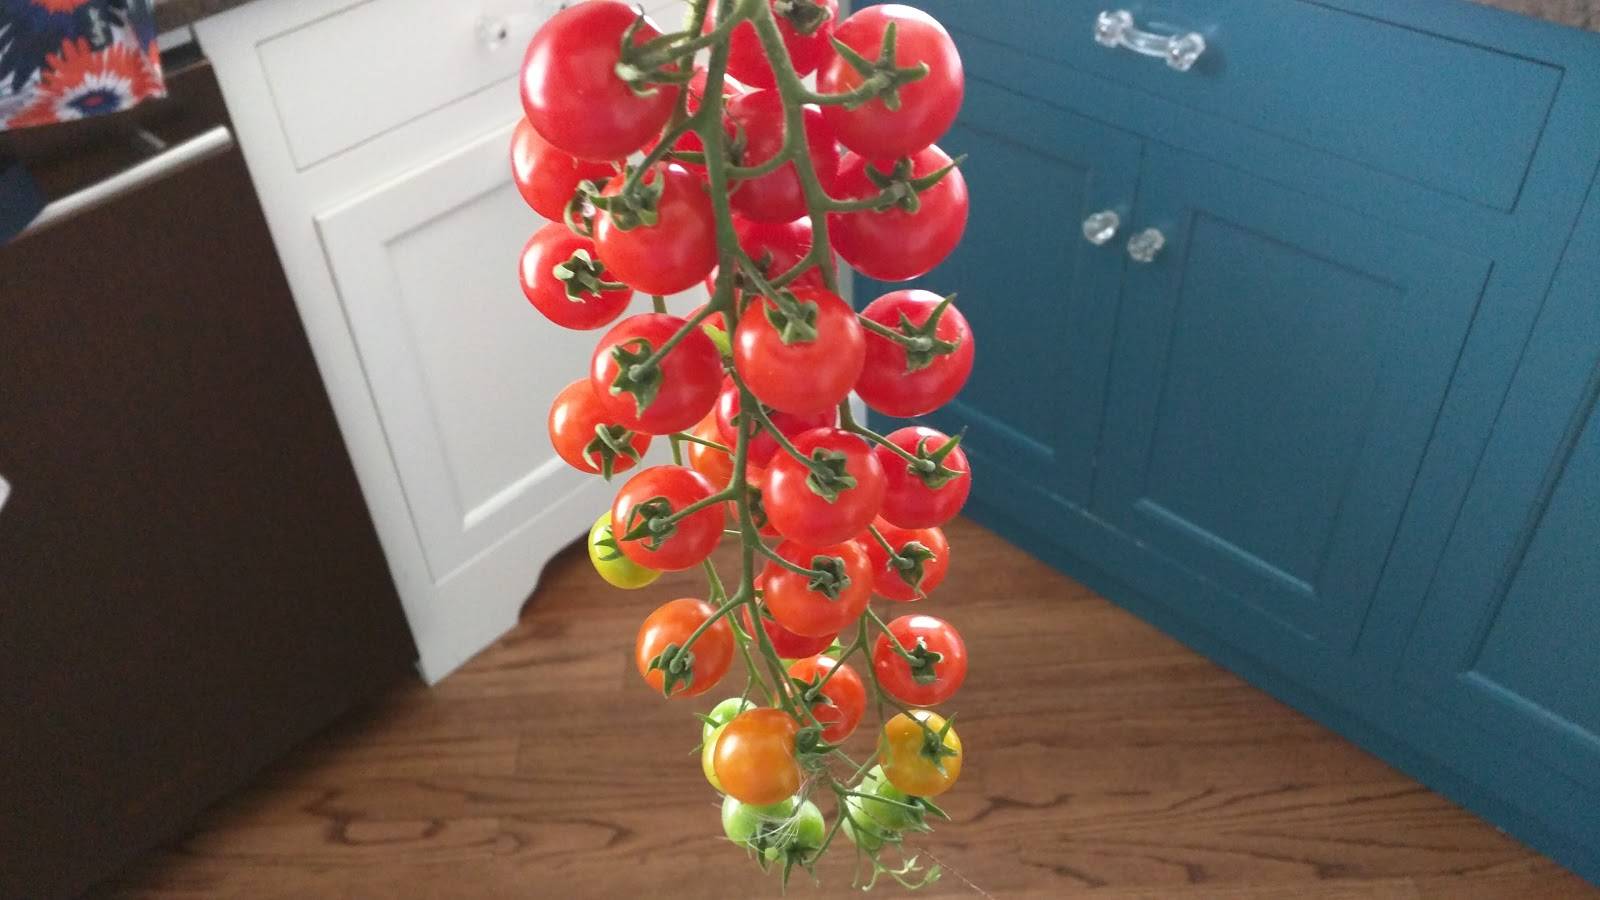 Томат рапунцель: характеристика и описание сорта, отзывы об урожайности помидоров, фото семян